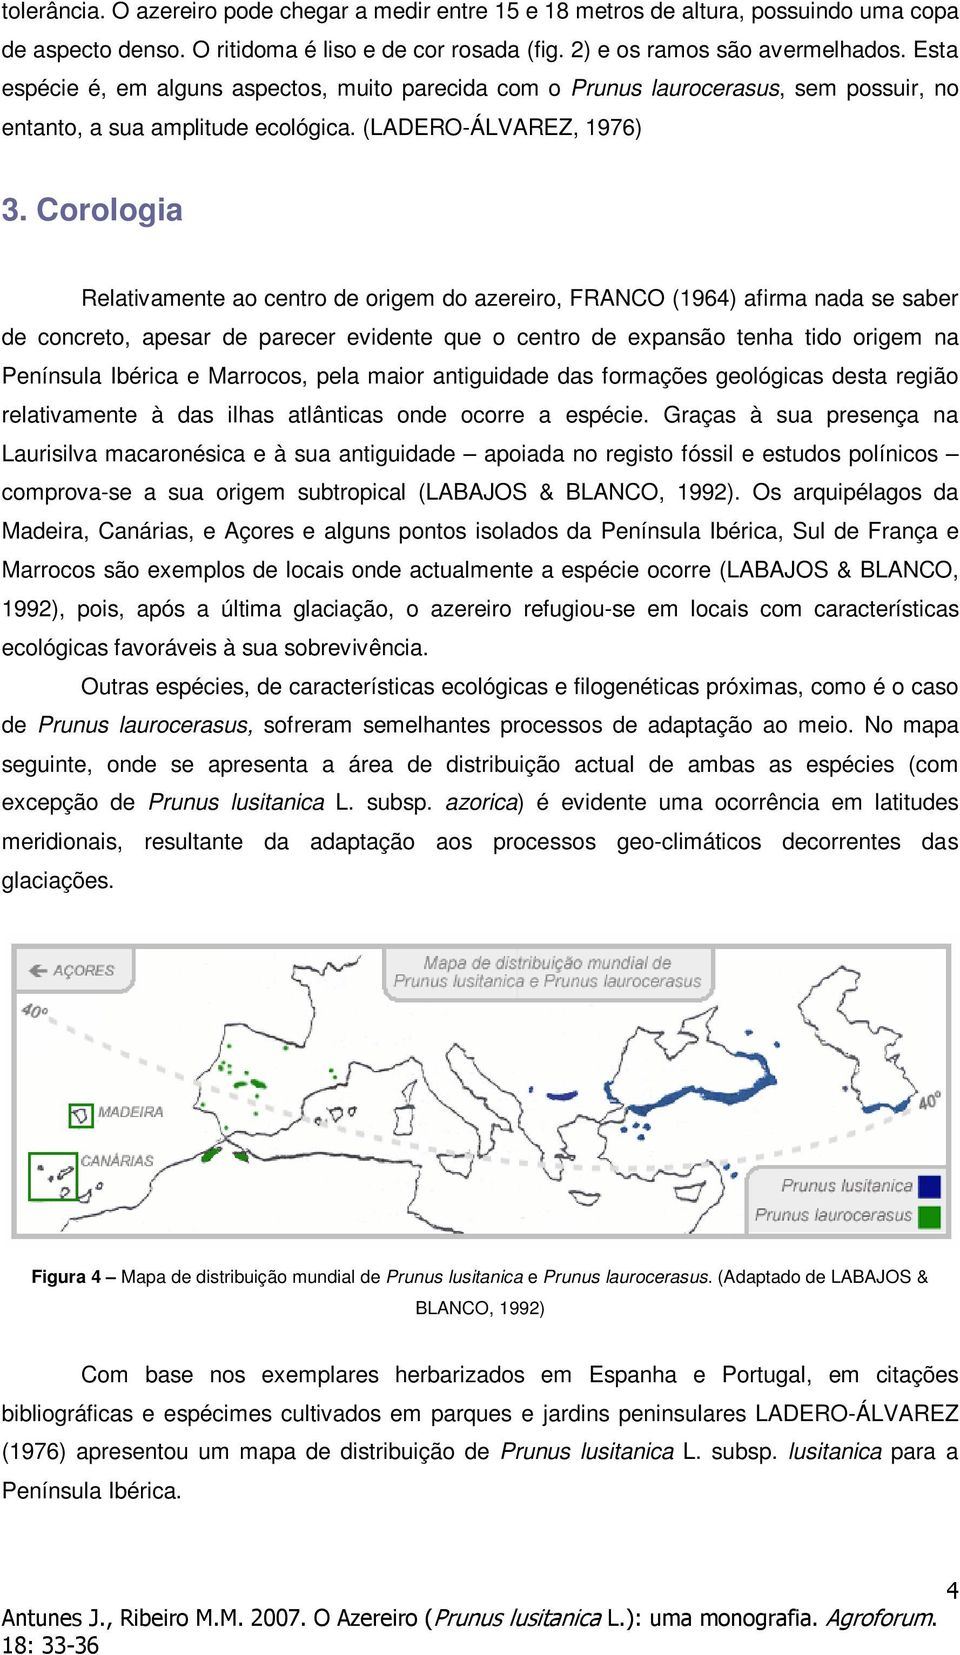 Corologia Relativamente ao centro de origem do azereiro, FRANCO (1964) afirma nada se saber de concreto, apesar de parecer evidente que o centro de expansão tenha tido origem na Península Ibérica e